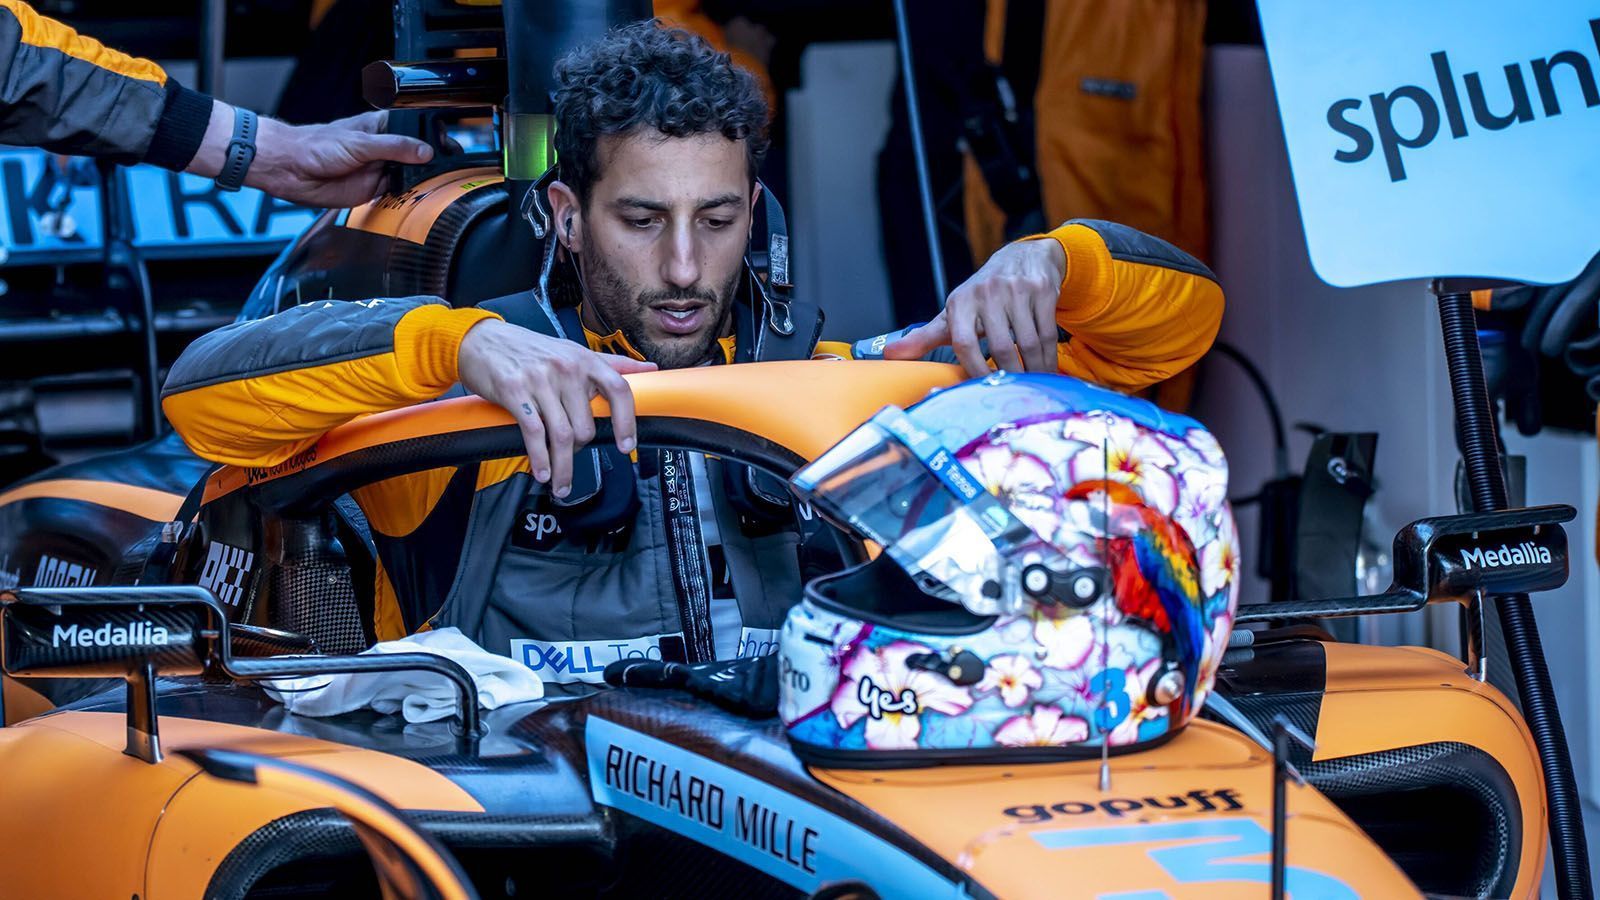 
                <strong>Daniel Ricciardo (McLaren)</strong><br>
                Daniel Ricciardo scheint sich weiterhin nicht im papayafarbenden Boliden von McLaren wohl zu fühlen. Nach fünf Rennen stehen lediglich elf Punkte zur Buche. Der Australier muss sich steigern. Andernfalls könnte seine zweite Saison bei McLaren bereits seine letzte sein. Das Traditionsteam will zurück an die Spitze. Dafür braucht es jedoch einen Ricciardo in Bestform. Noch besteht die Hoffnung, dass dem Australier - wegen einer Covid-Erkrankung kurz vor den Testfahrten - die letzte Sicherheit im Wagen fehlt. Diese sollte er aber bald finden. ran-Note nach fünf Rennen: 
              